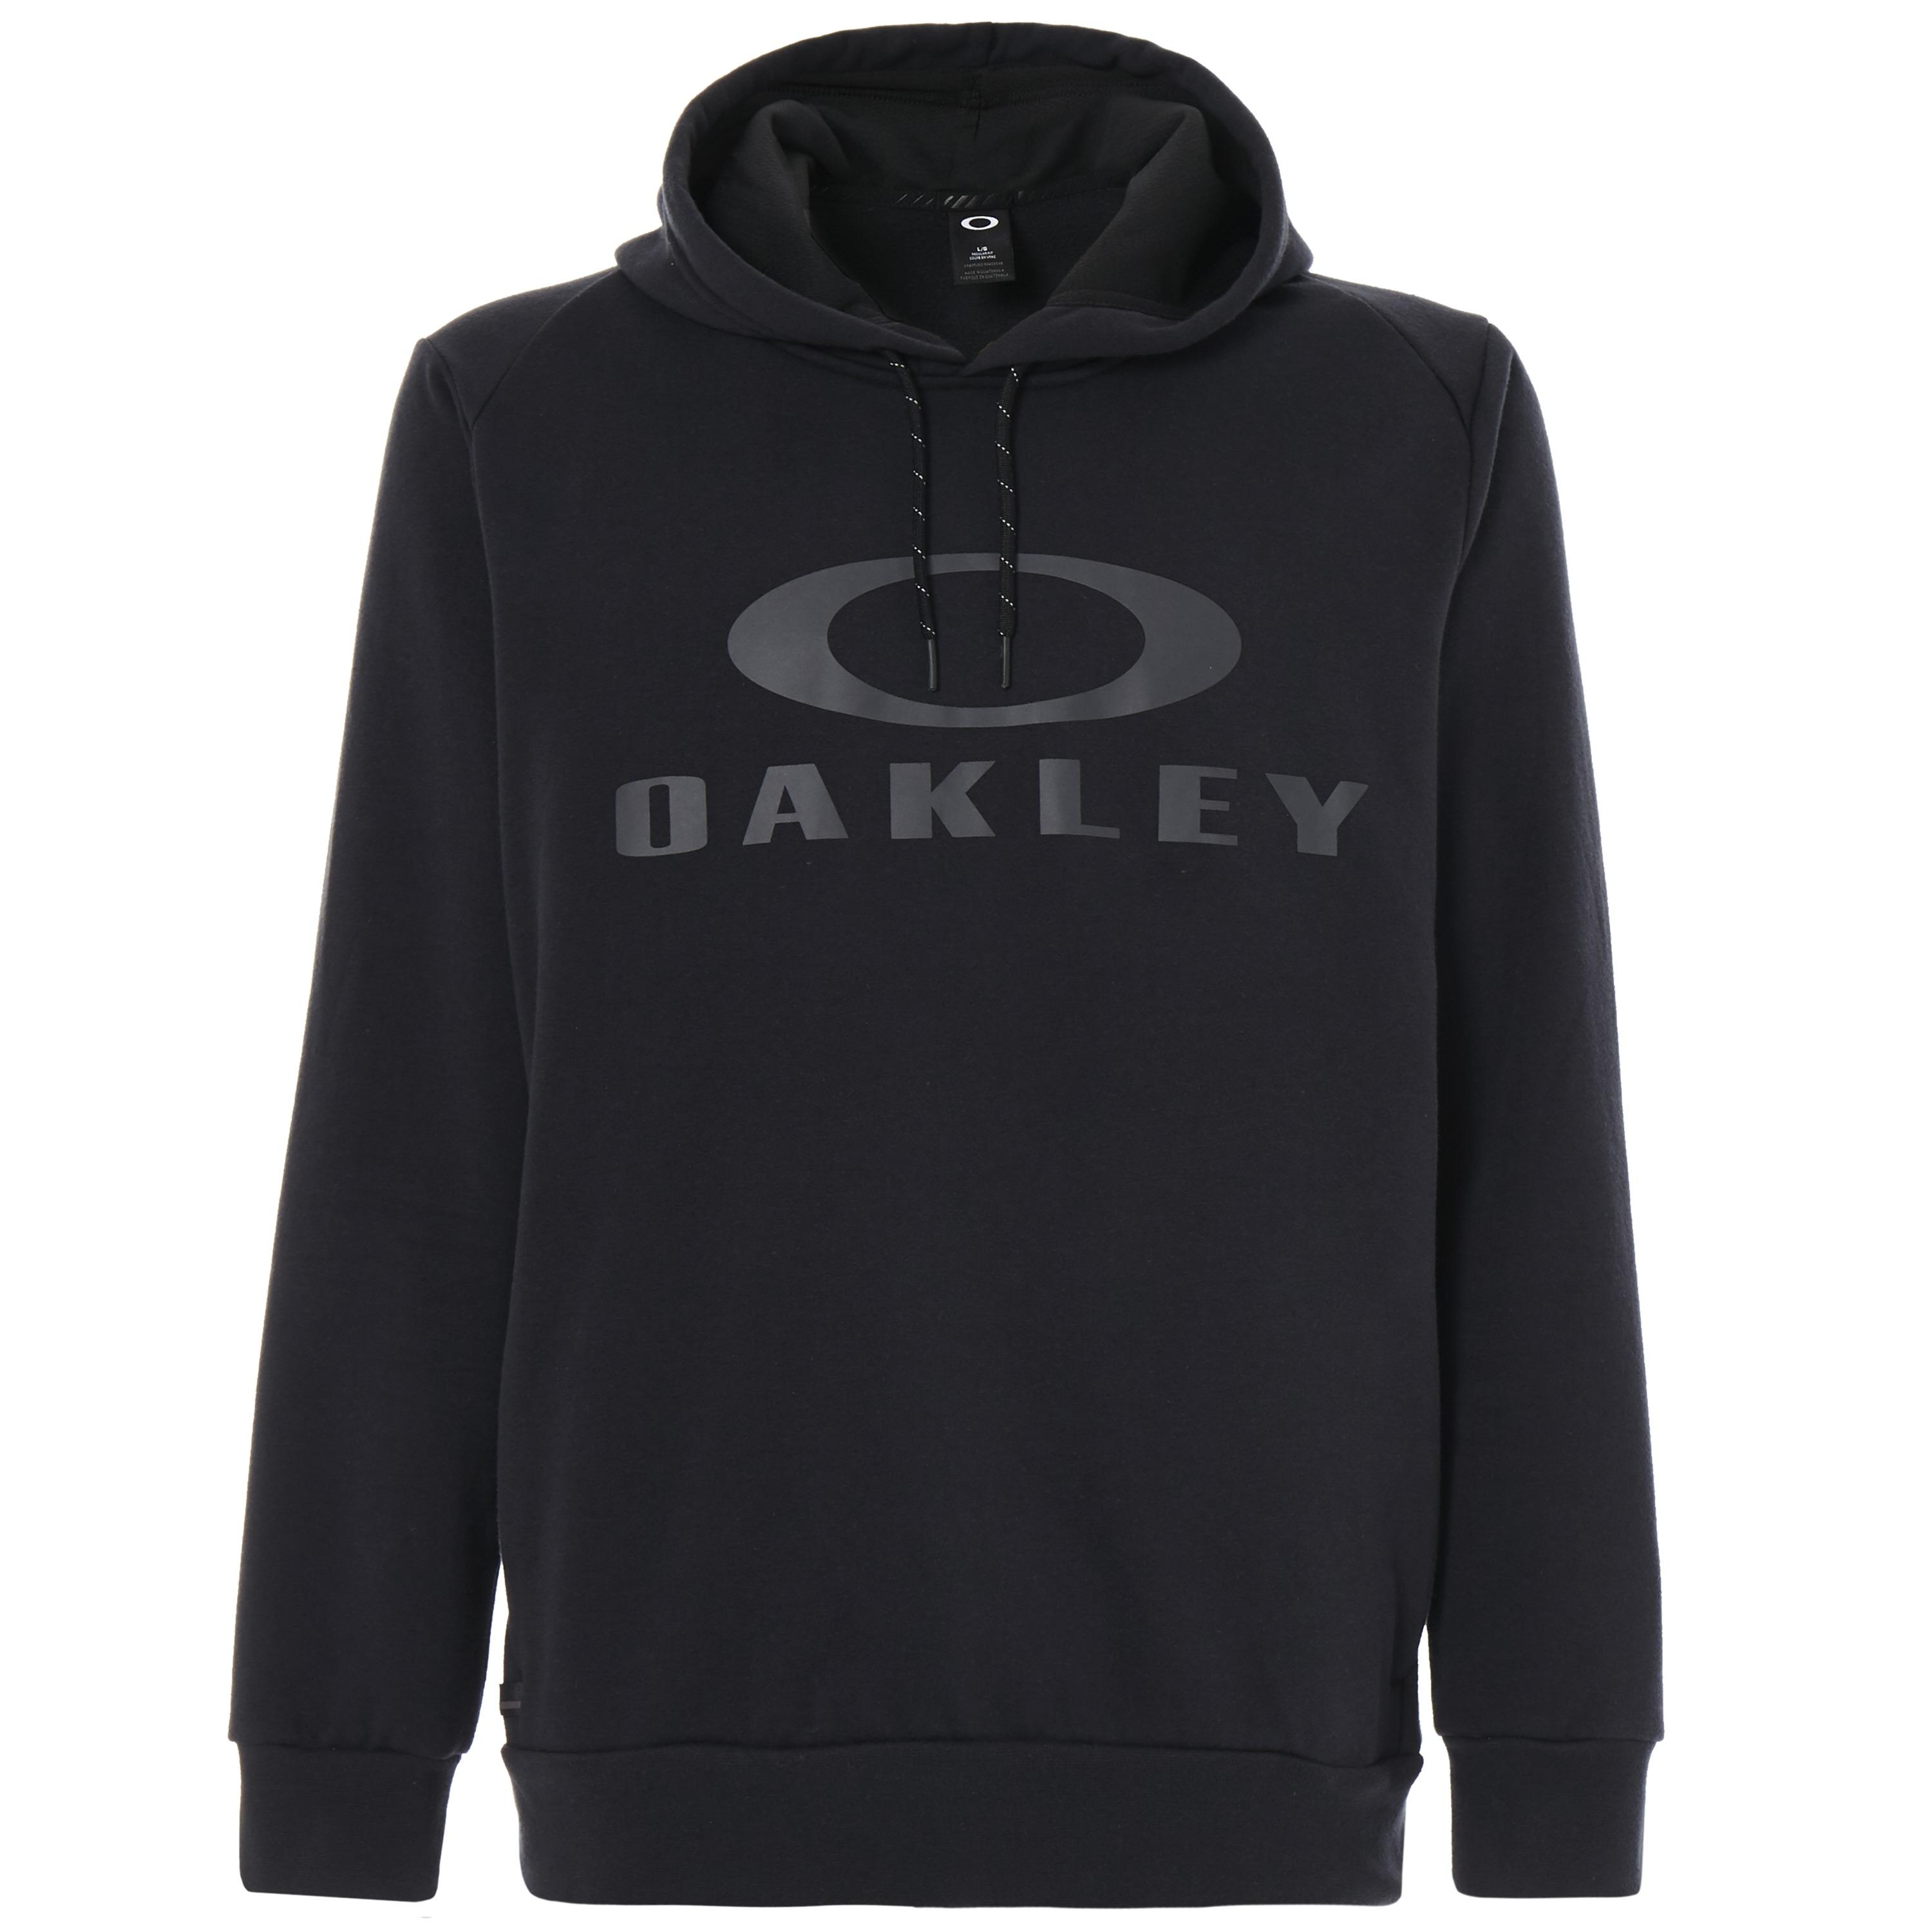 oakley sweater